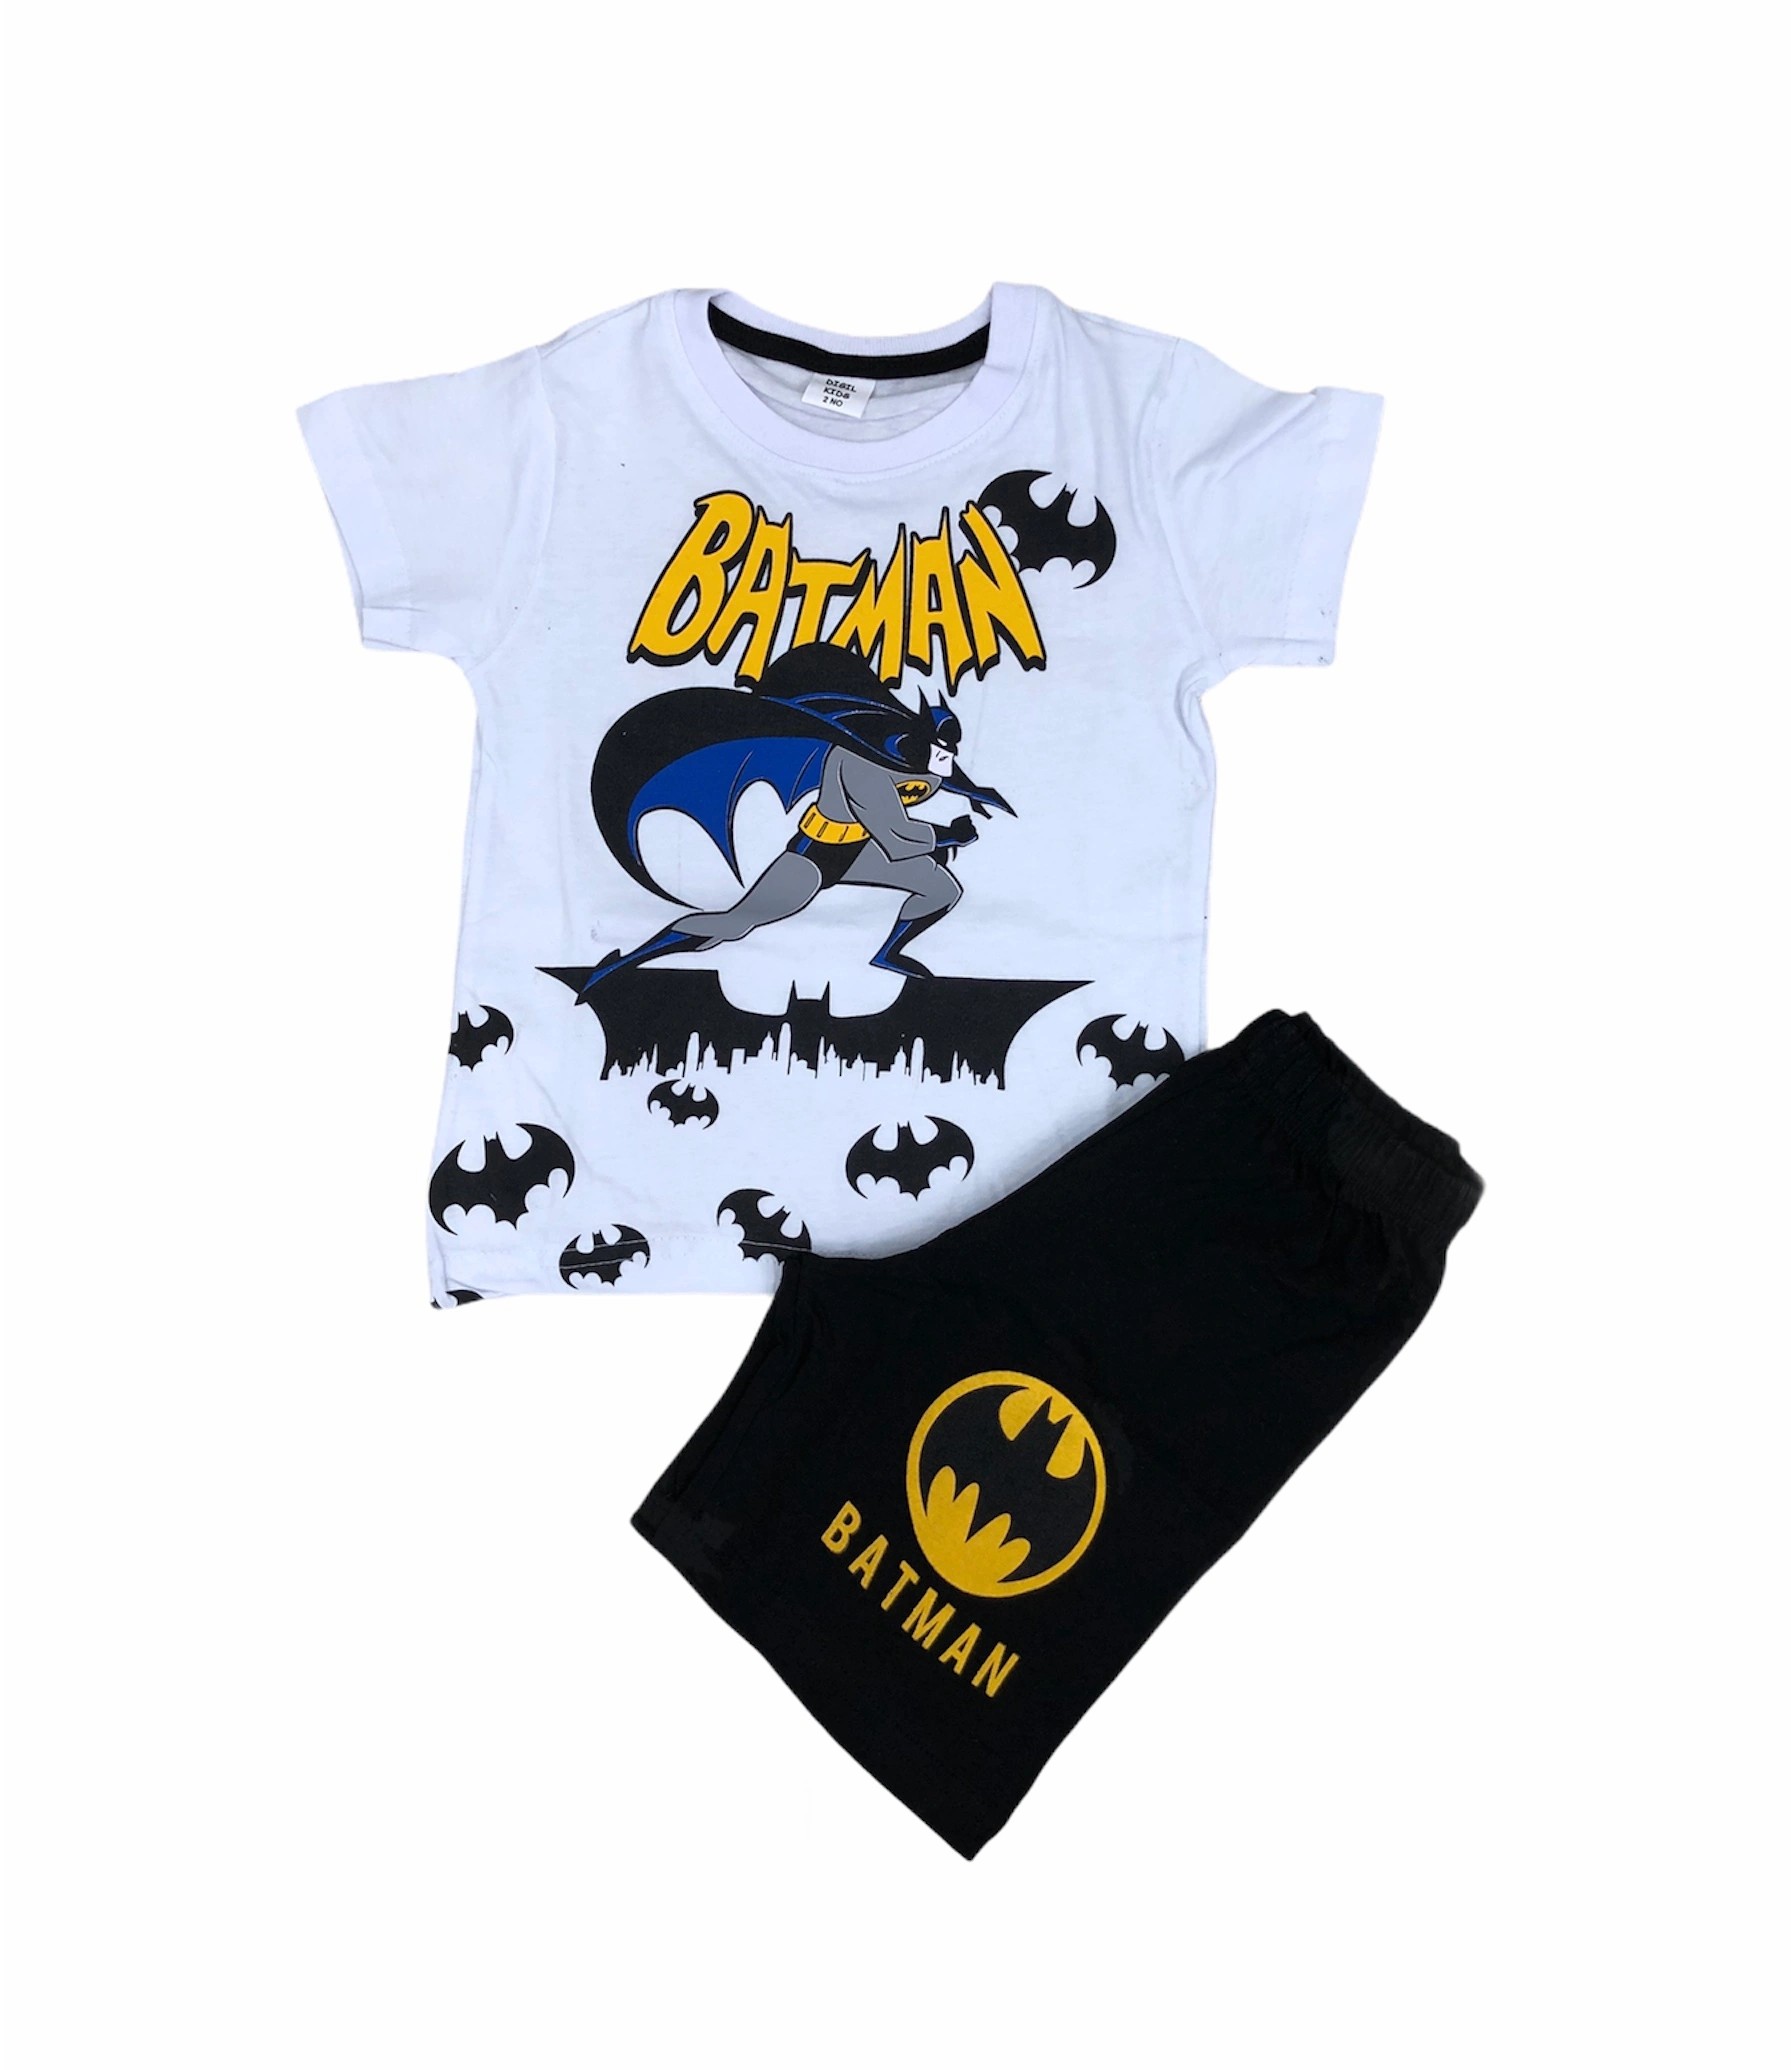 Soie Cotton Erkek Çocuk Batman Baskılı Şortlu Penye Takım  - Karışık - 100009029